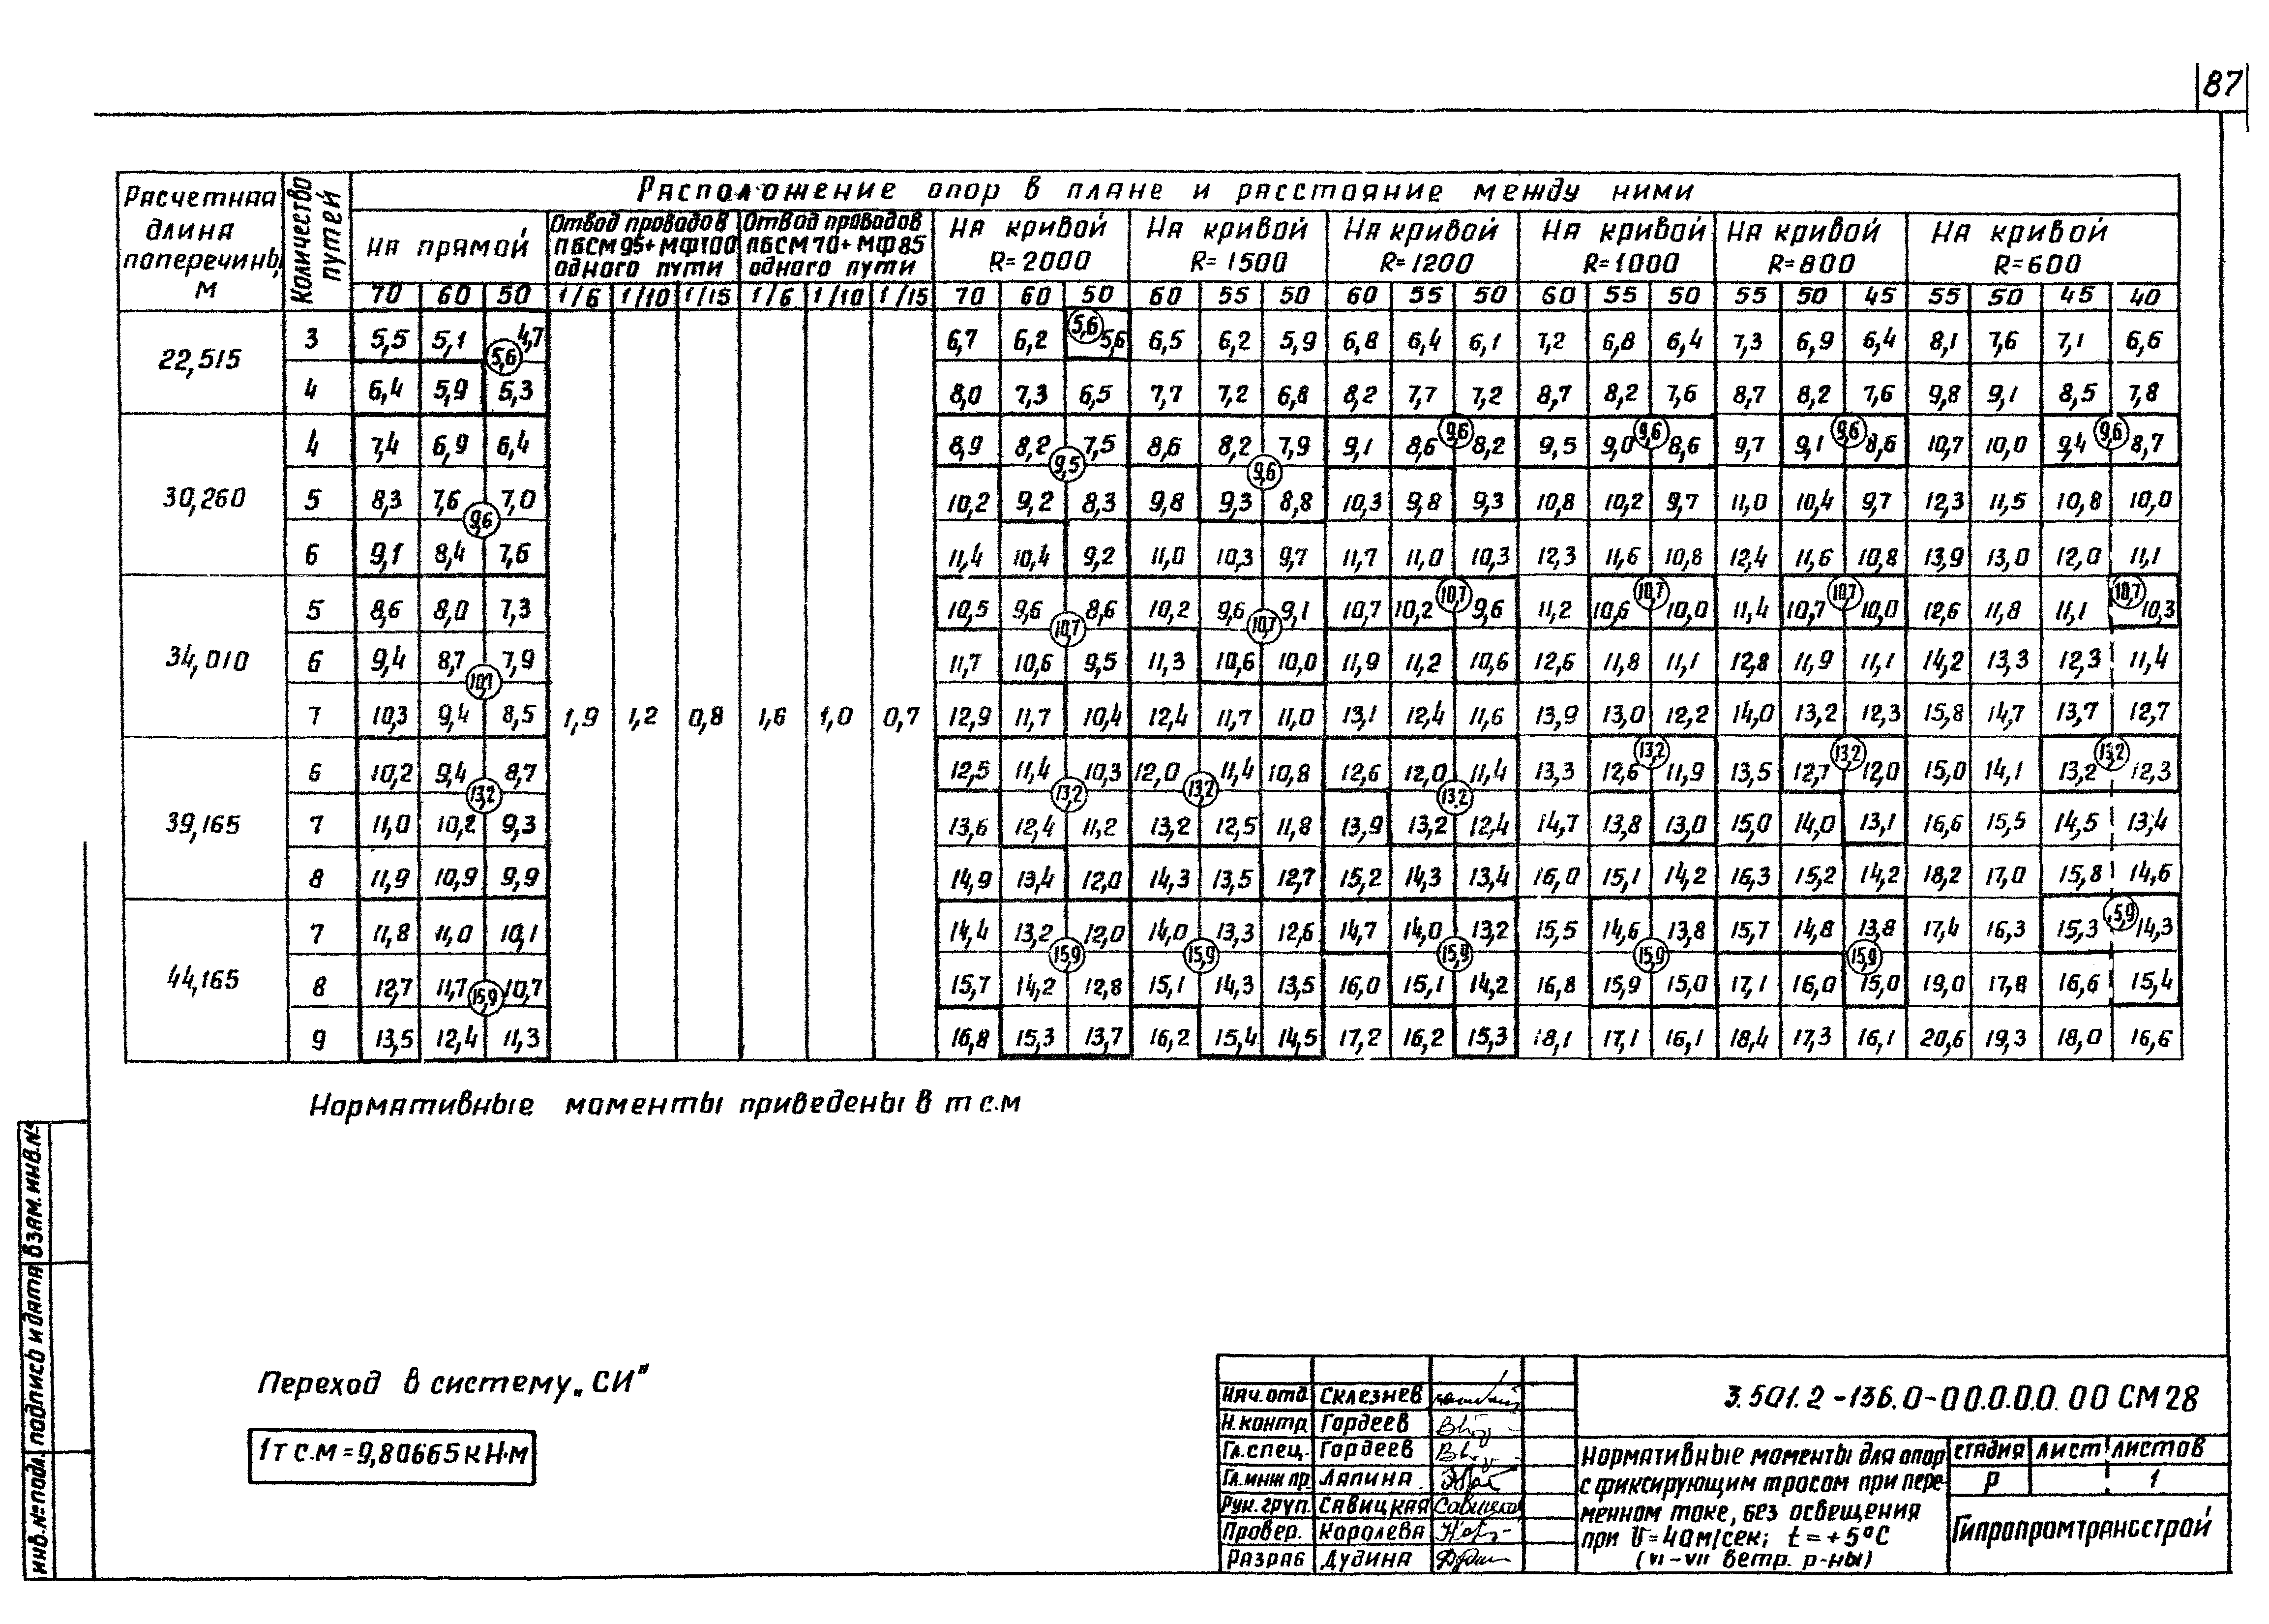 Серия 3.501.2-136